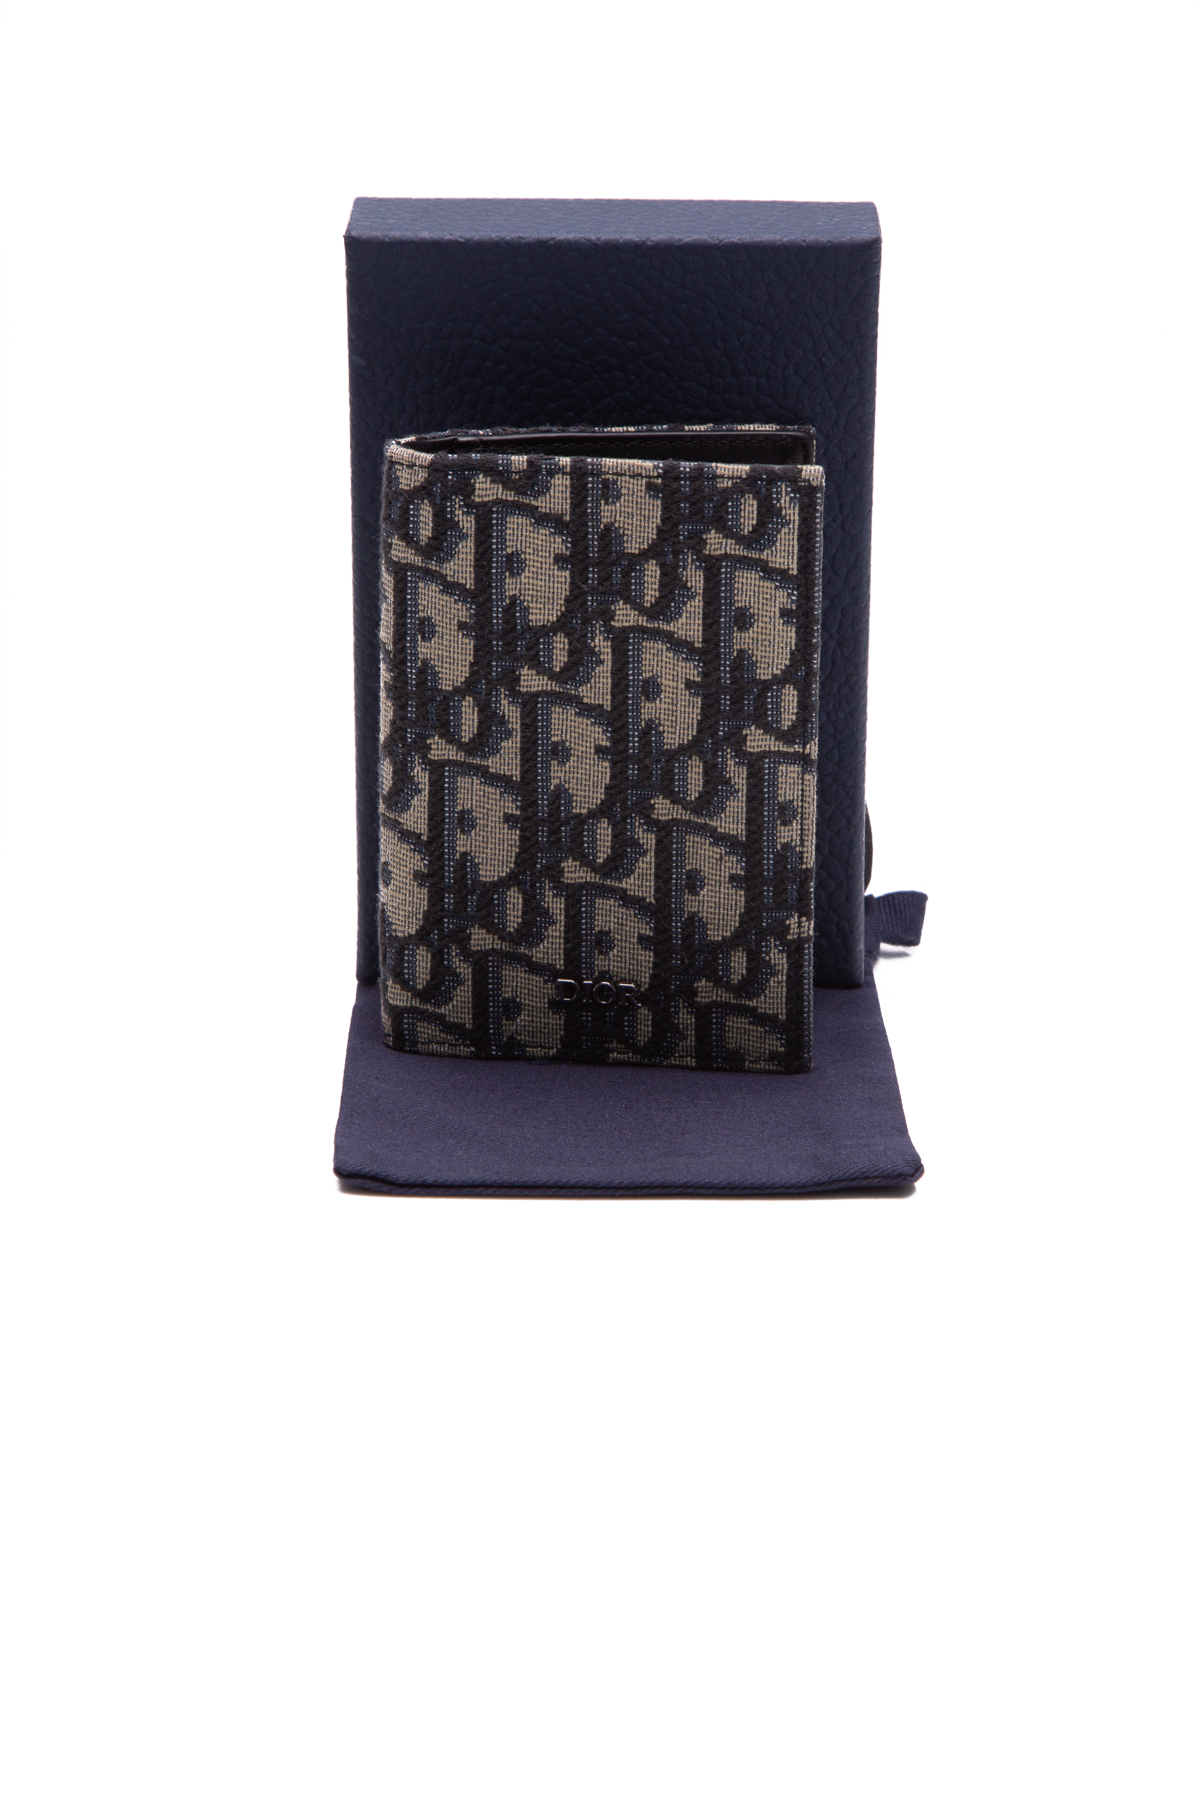 Christian Dior Pocket Organizer Oblique Jacquard Card Holder